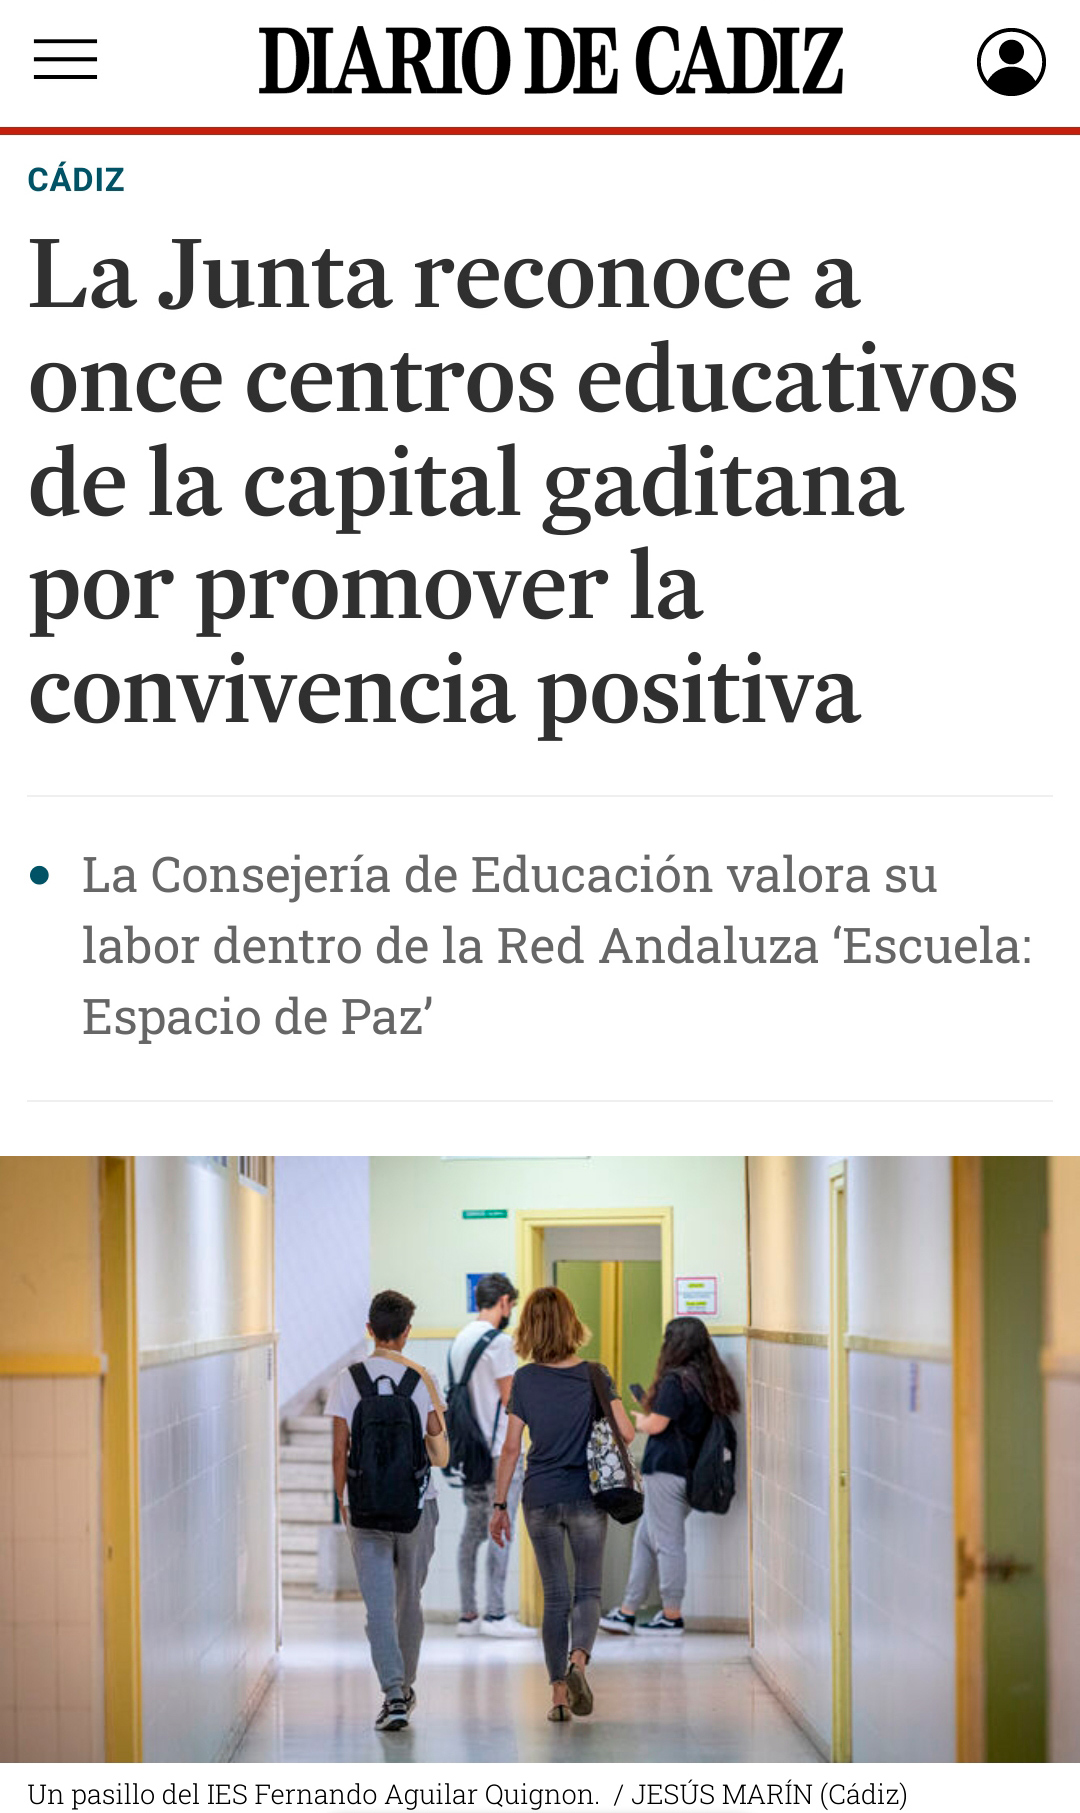 Amor de Dios es reconocido junto a otras diez escuelas de Cádiz por promover la convivencia positiva